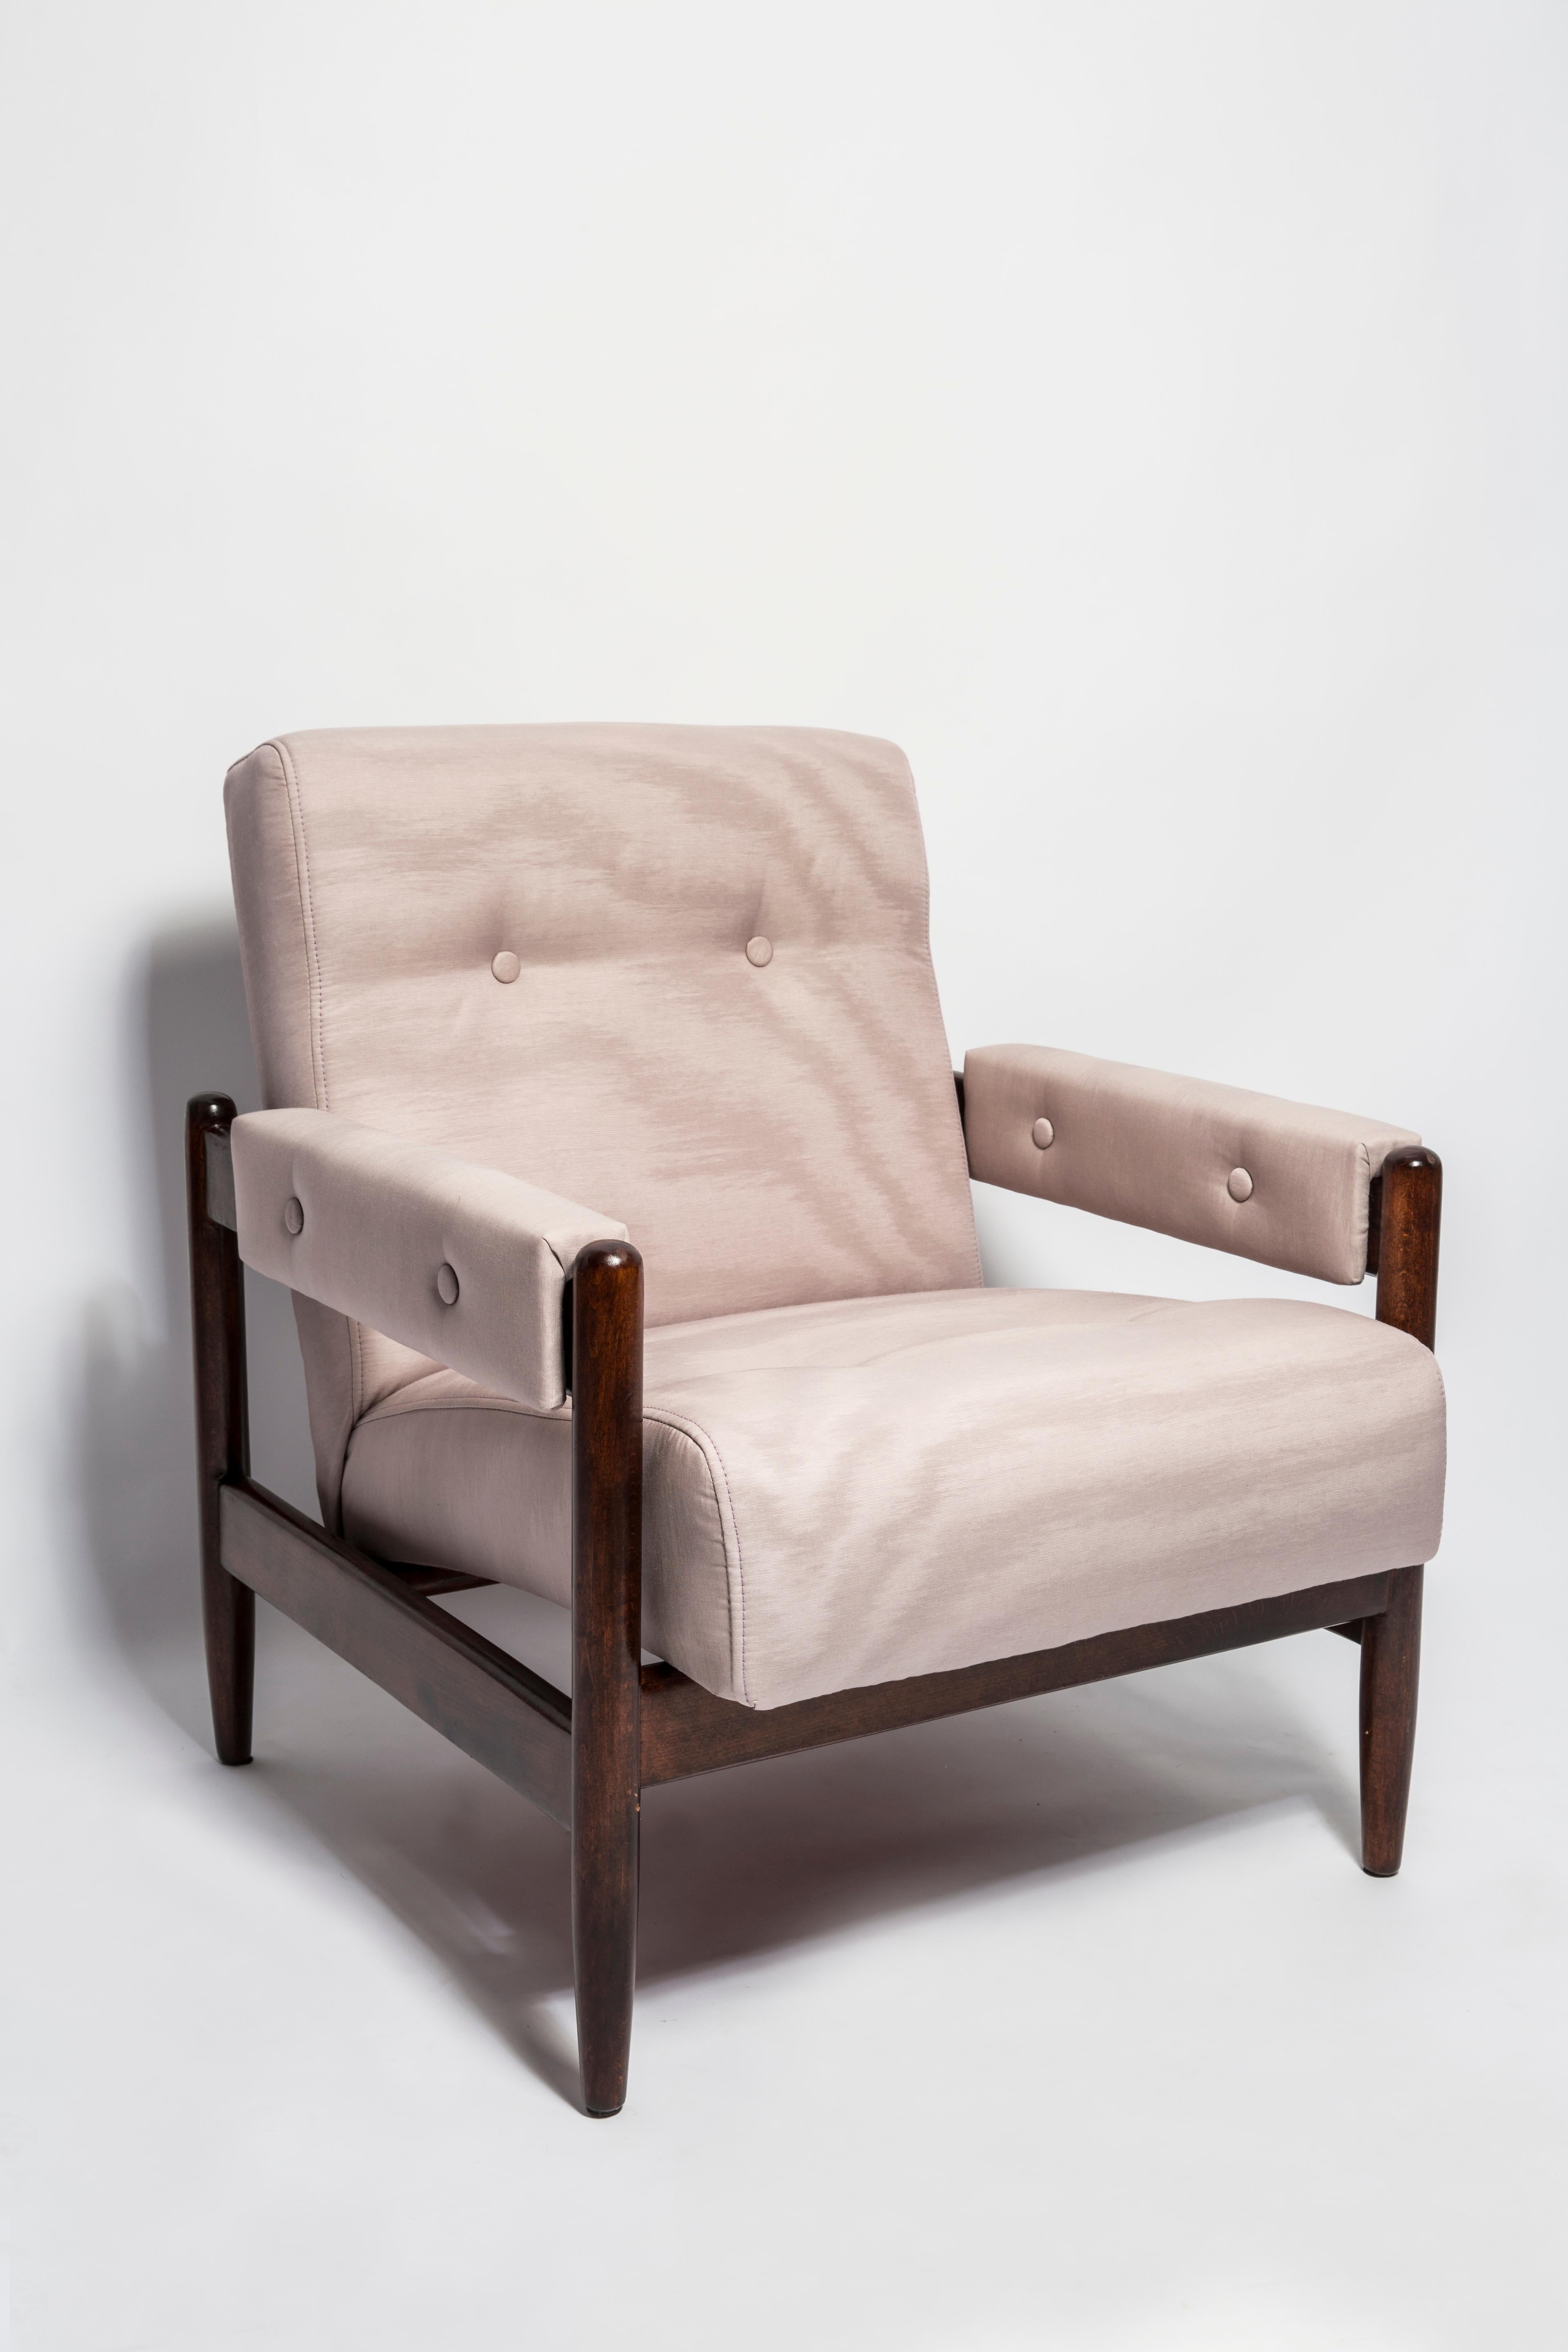 Ein wunderschöner Sessel, der in den 1960er Jahren in Polen hergestellt wurde. Stabiles Design der Möbel und ein bequemer Sitz. Möbel nach vollständiger Renovierung der Polsterung, aufgefrischte Holzarbeiten. Das Ganze ist mit hochwertigem, angenehm